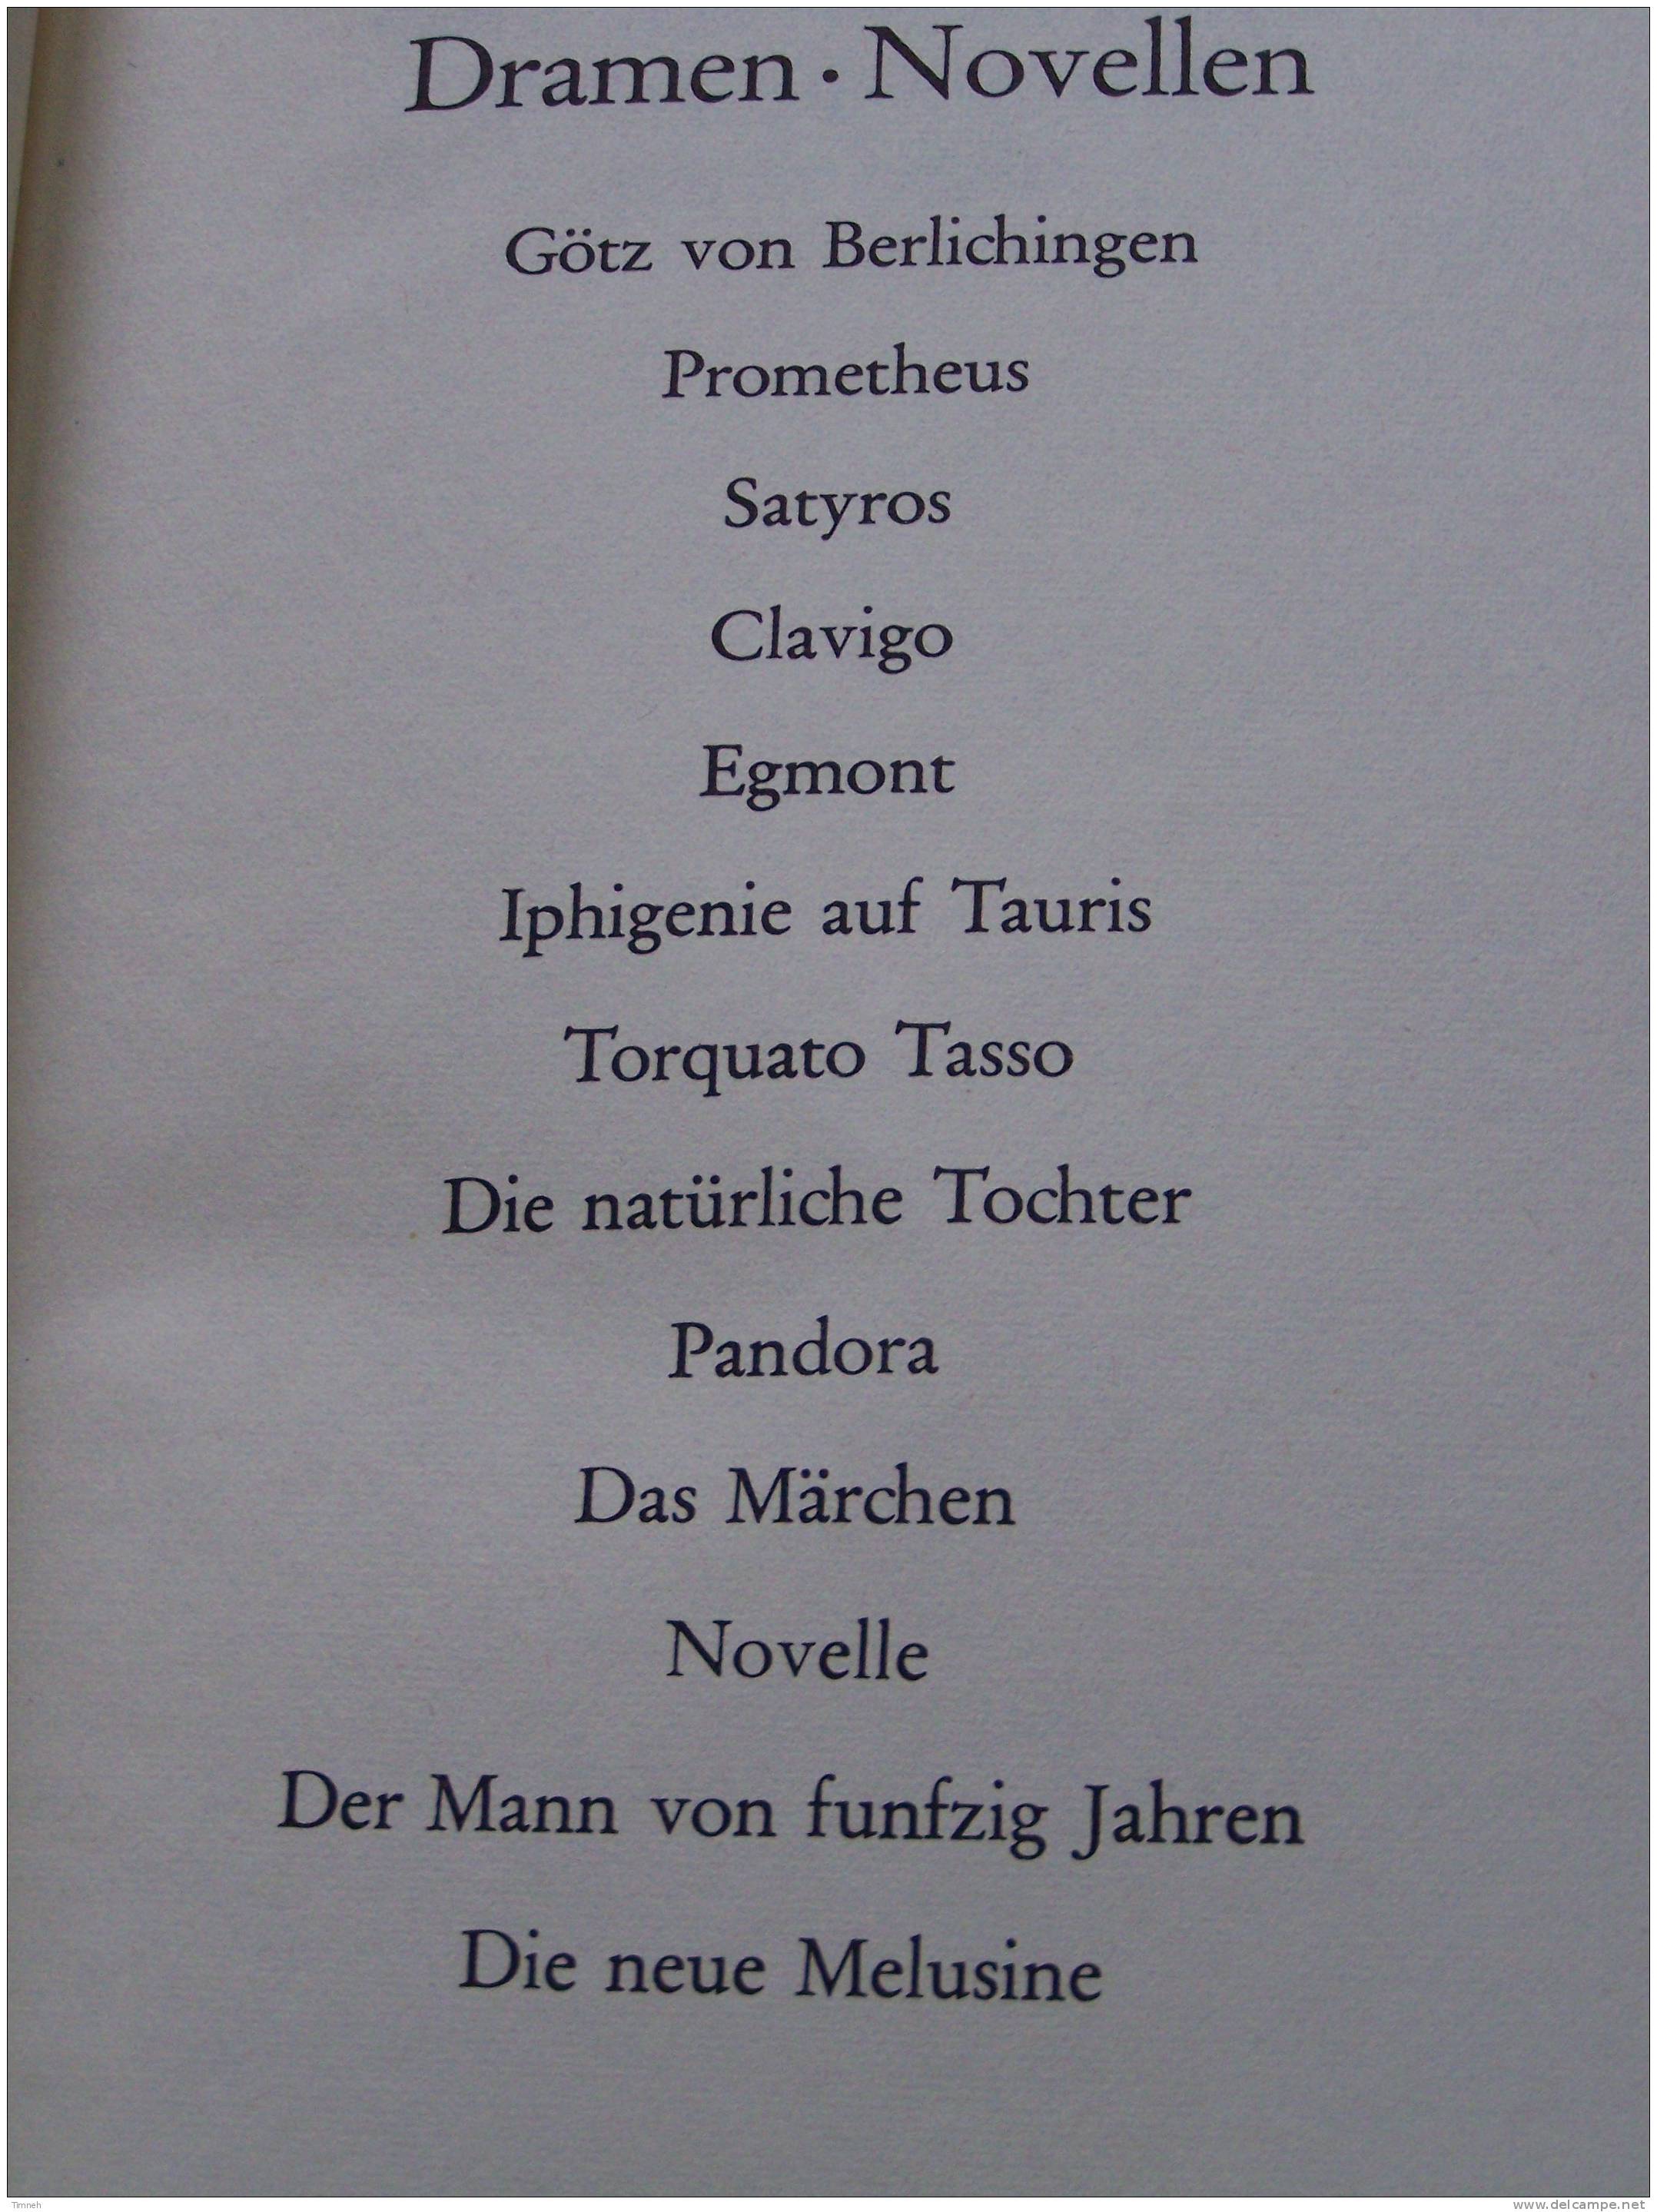 GOETHE WERKE - 6 BANDEN TOMES - Insel Verlag 1965 - WERTHER MEISTER FAUST GEDICHTE DICHTUNG WARHEIT - International Authors